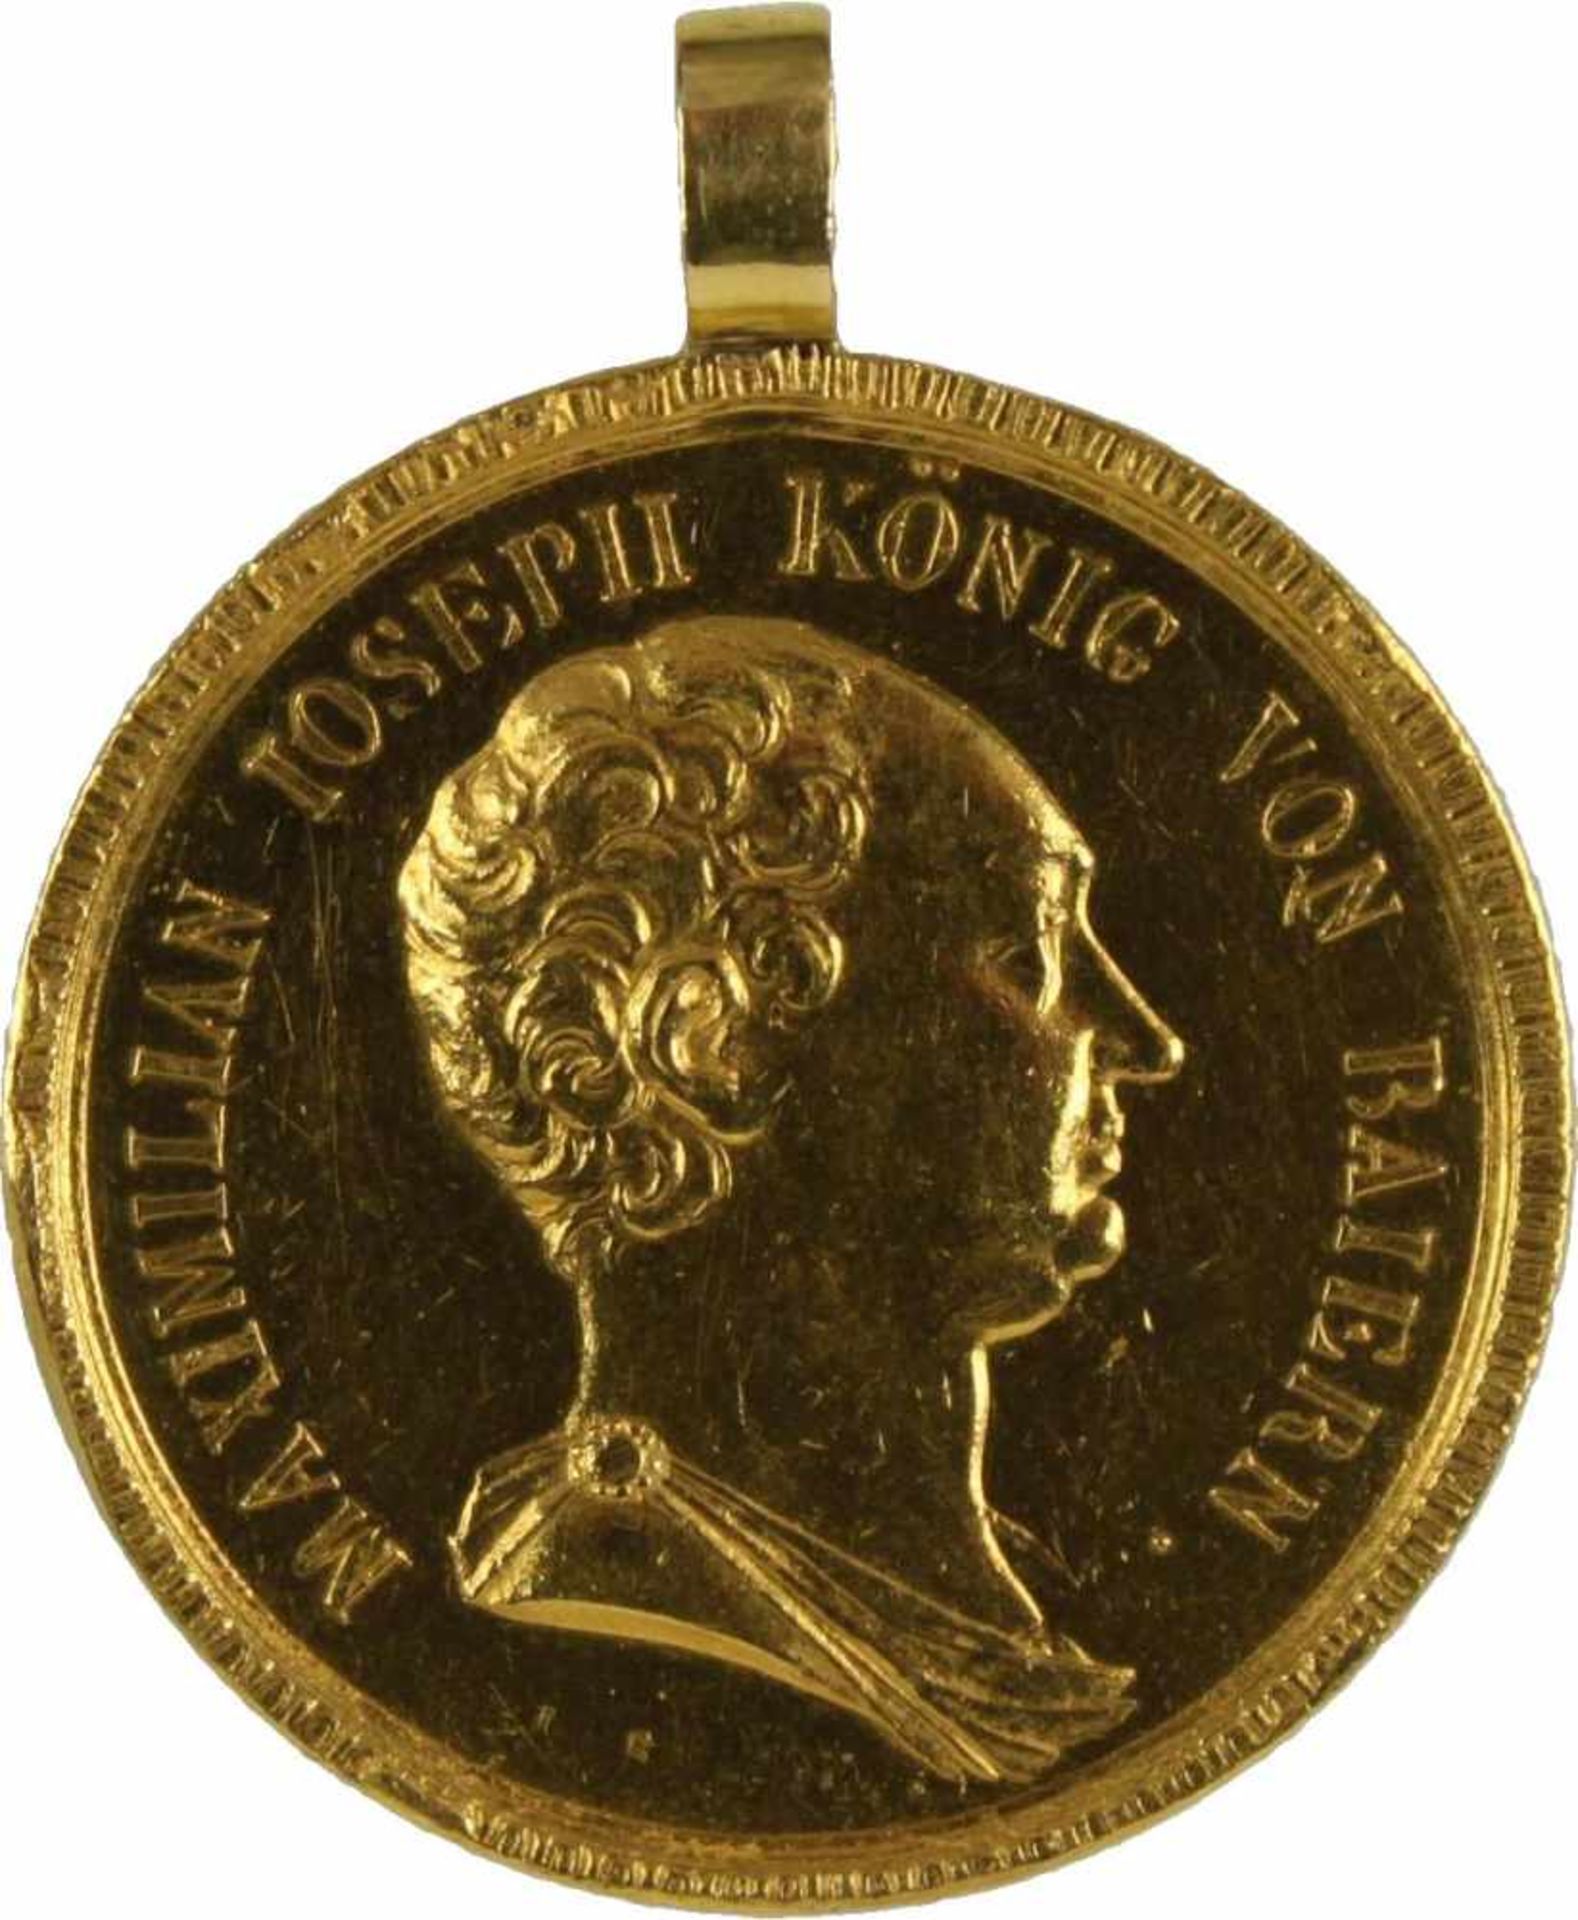 Goldene Zivilverdienstmedaille, Brustbild König Max Joseph I., verliehen 1806-1840. Medaille Gold, - Bild 4 aus 4